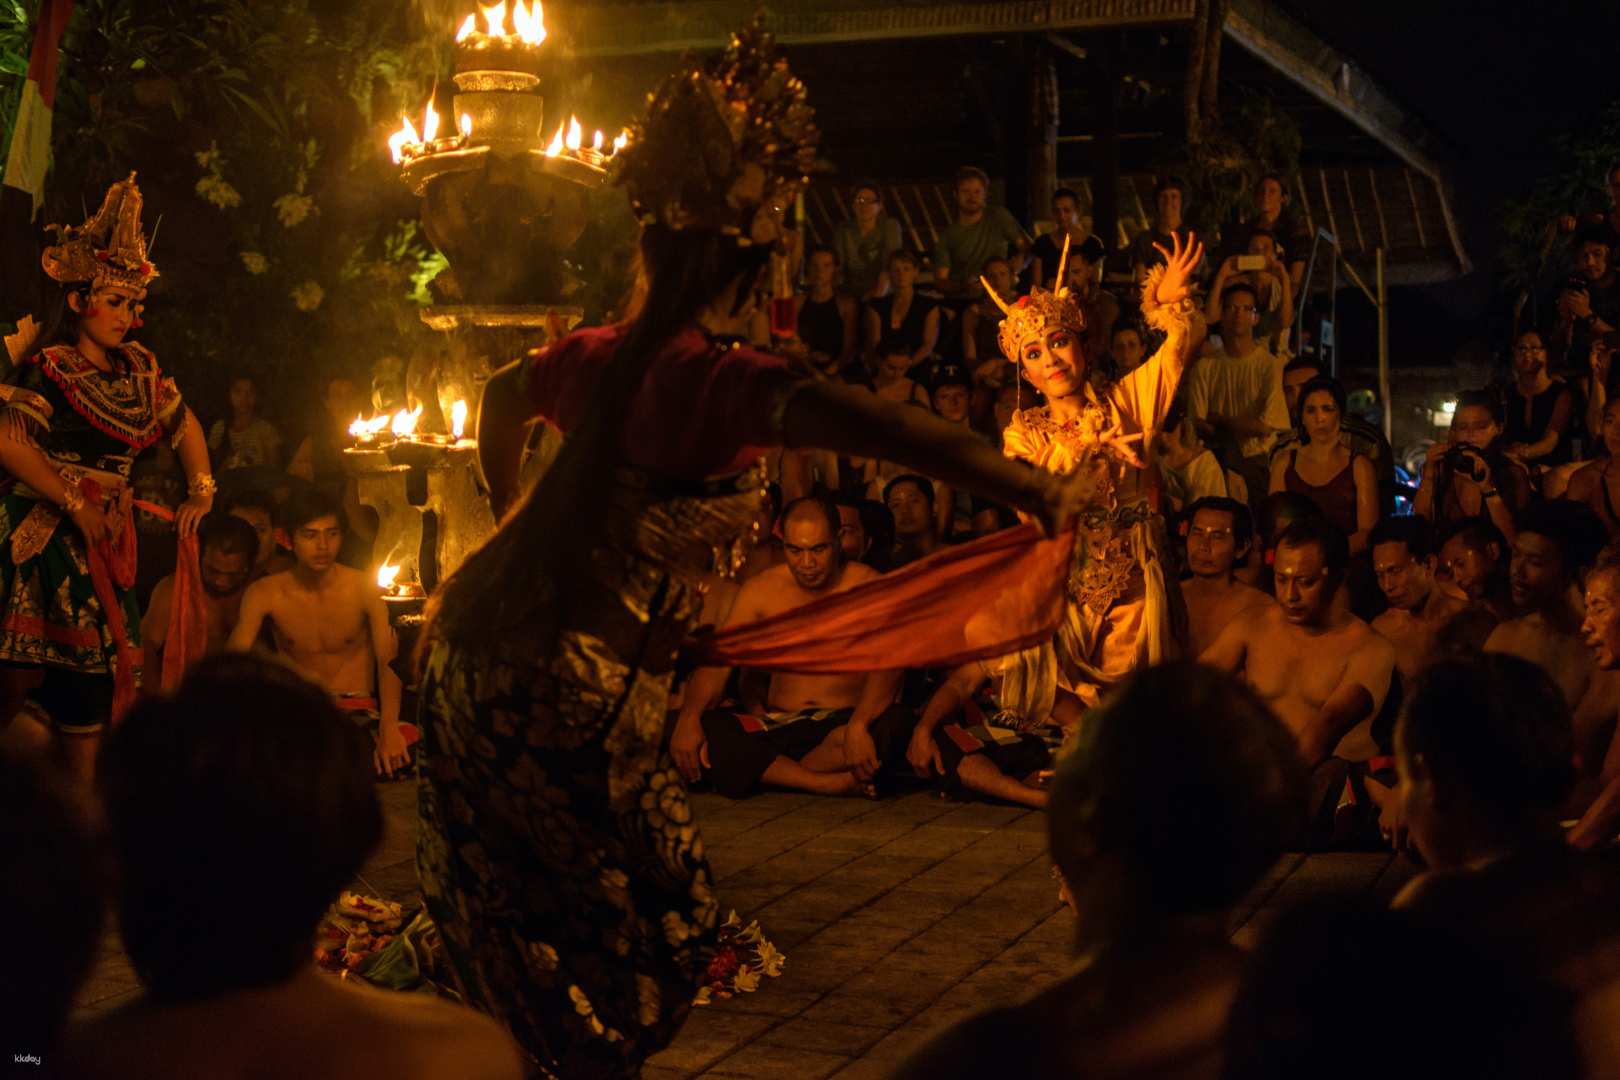 印尼-巴厘島烏布傳統表演| 經典卡洽火舞秀門票